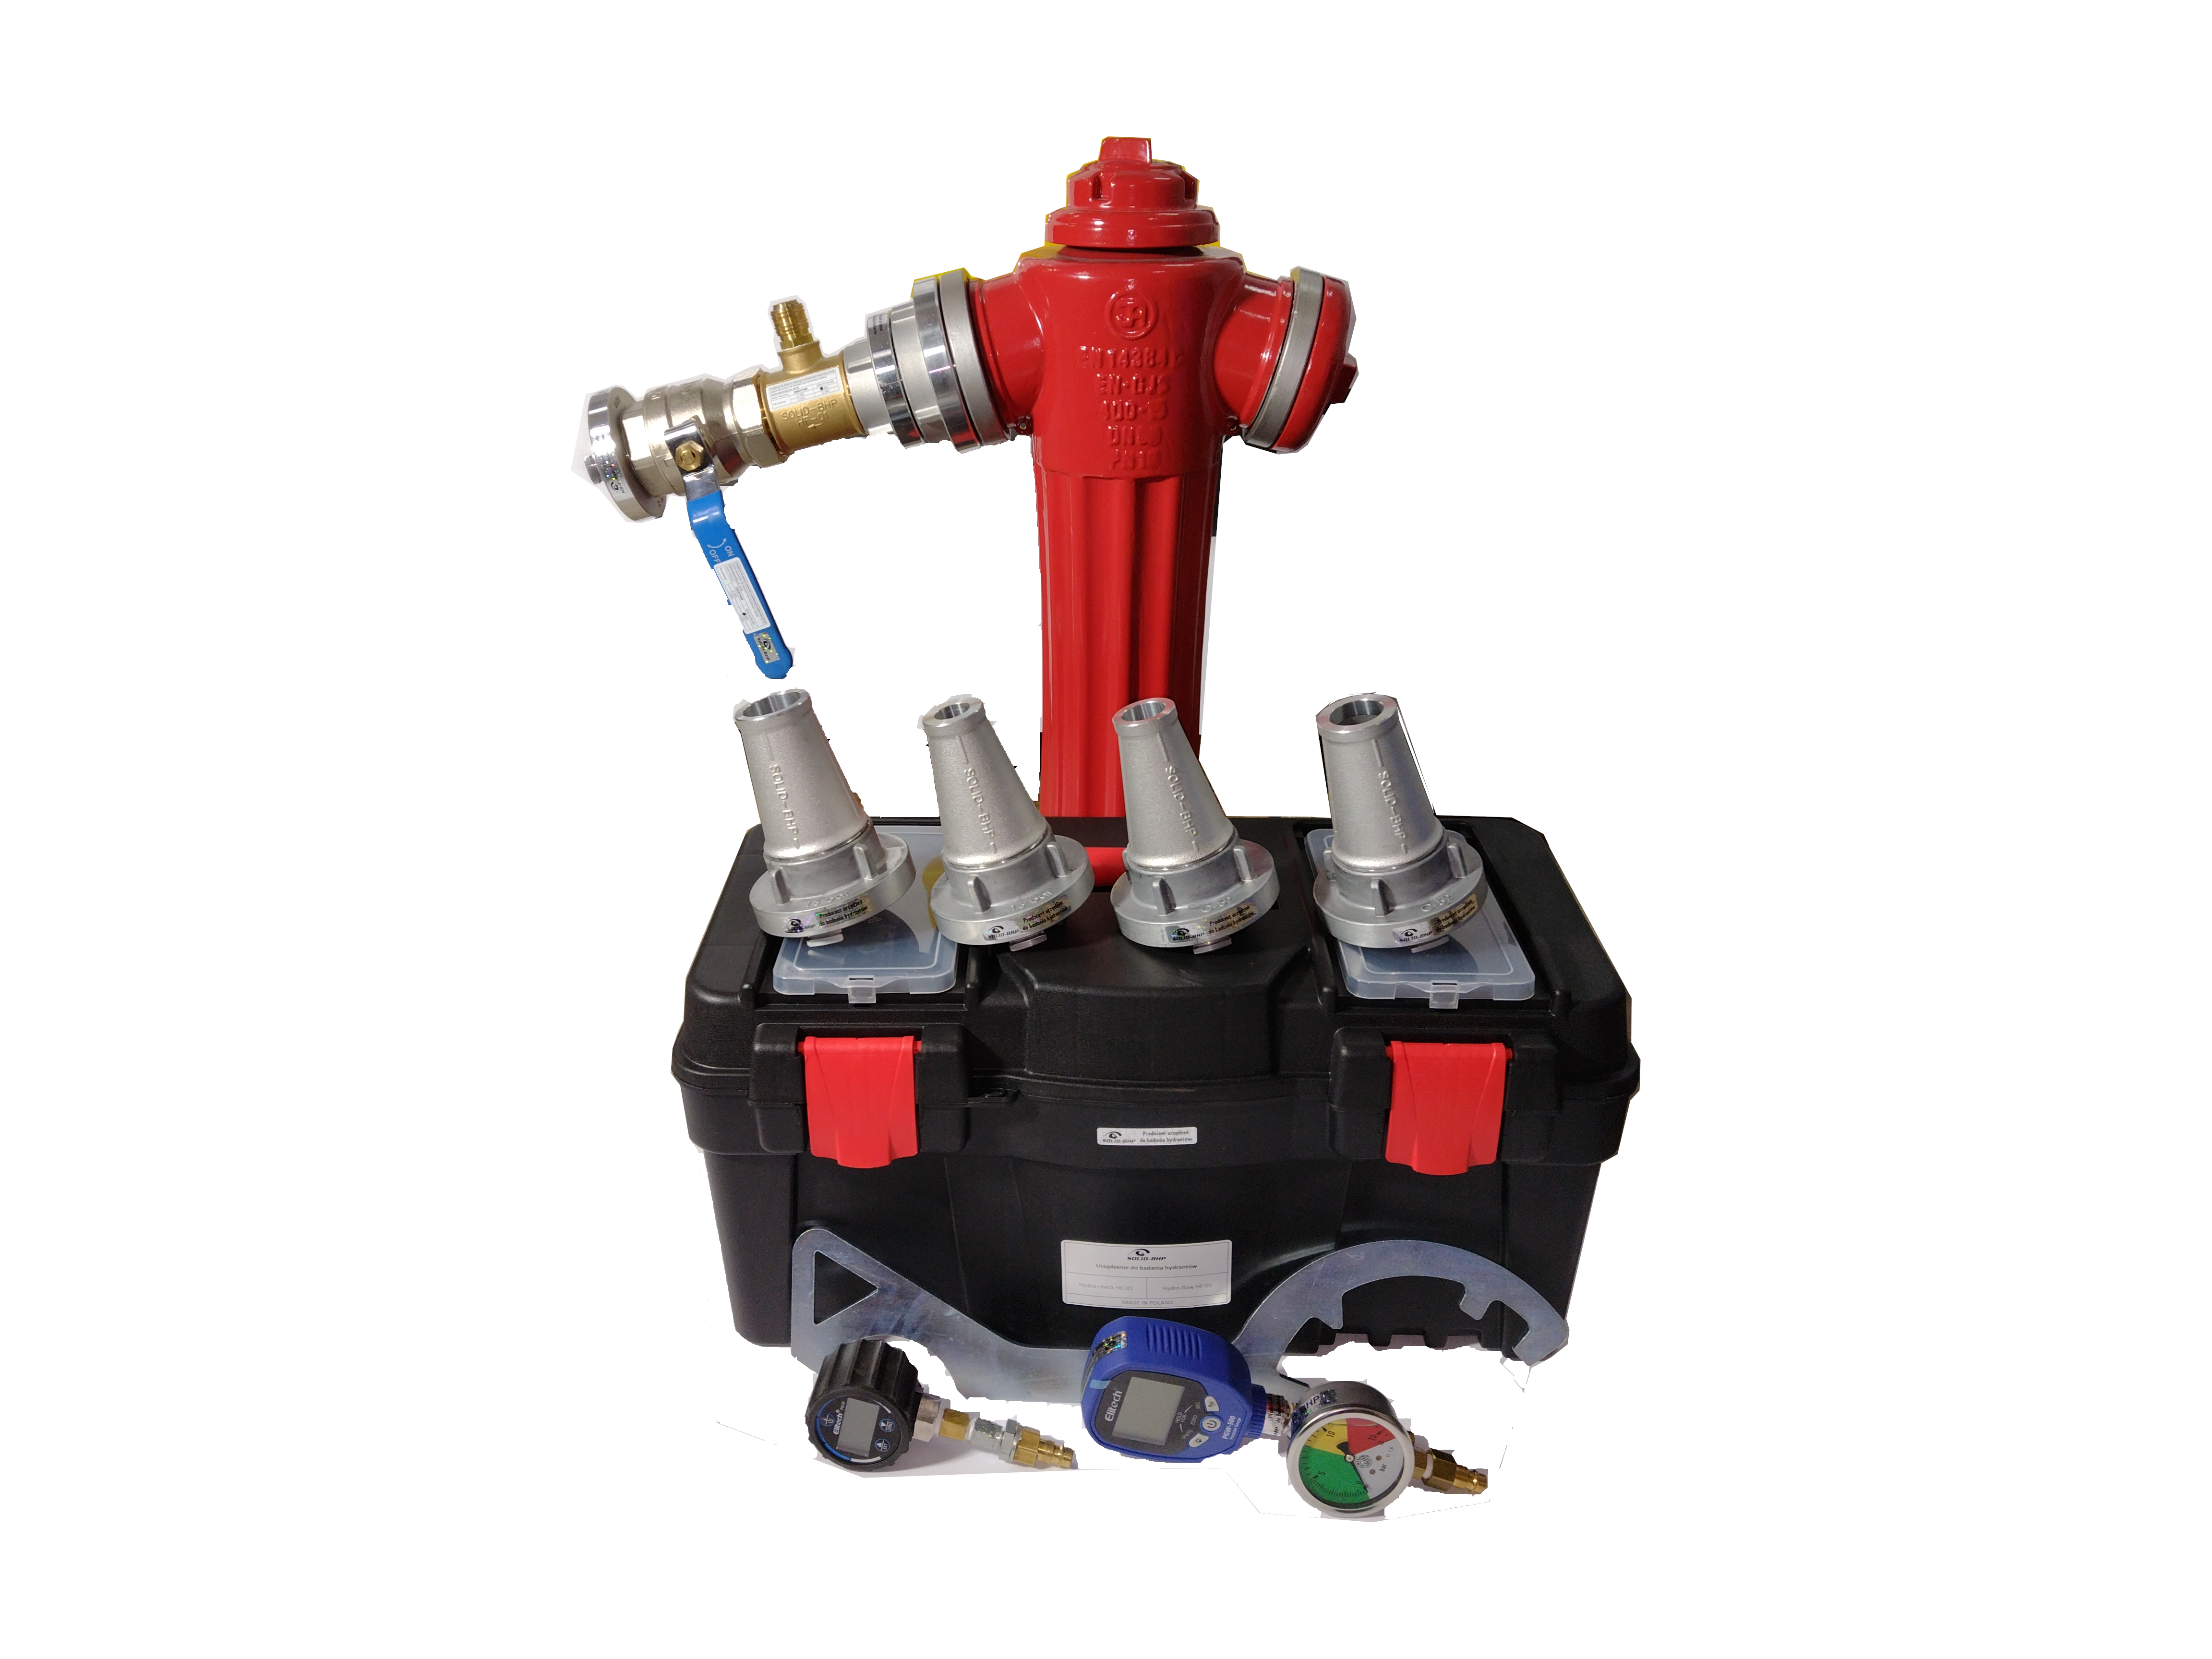 Tester wydajności hydrantów, hydro-tester hydrantów